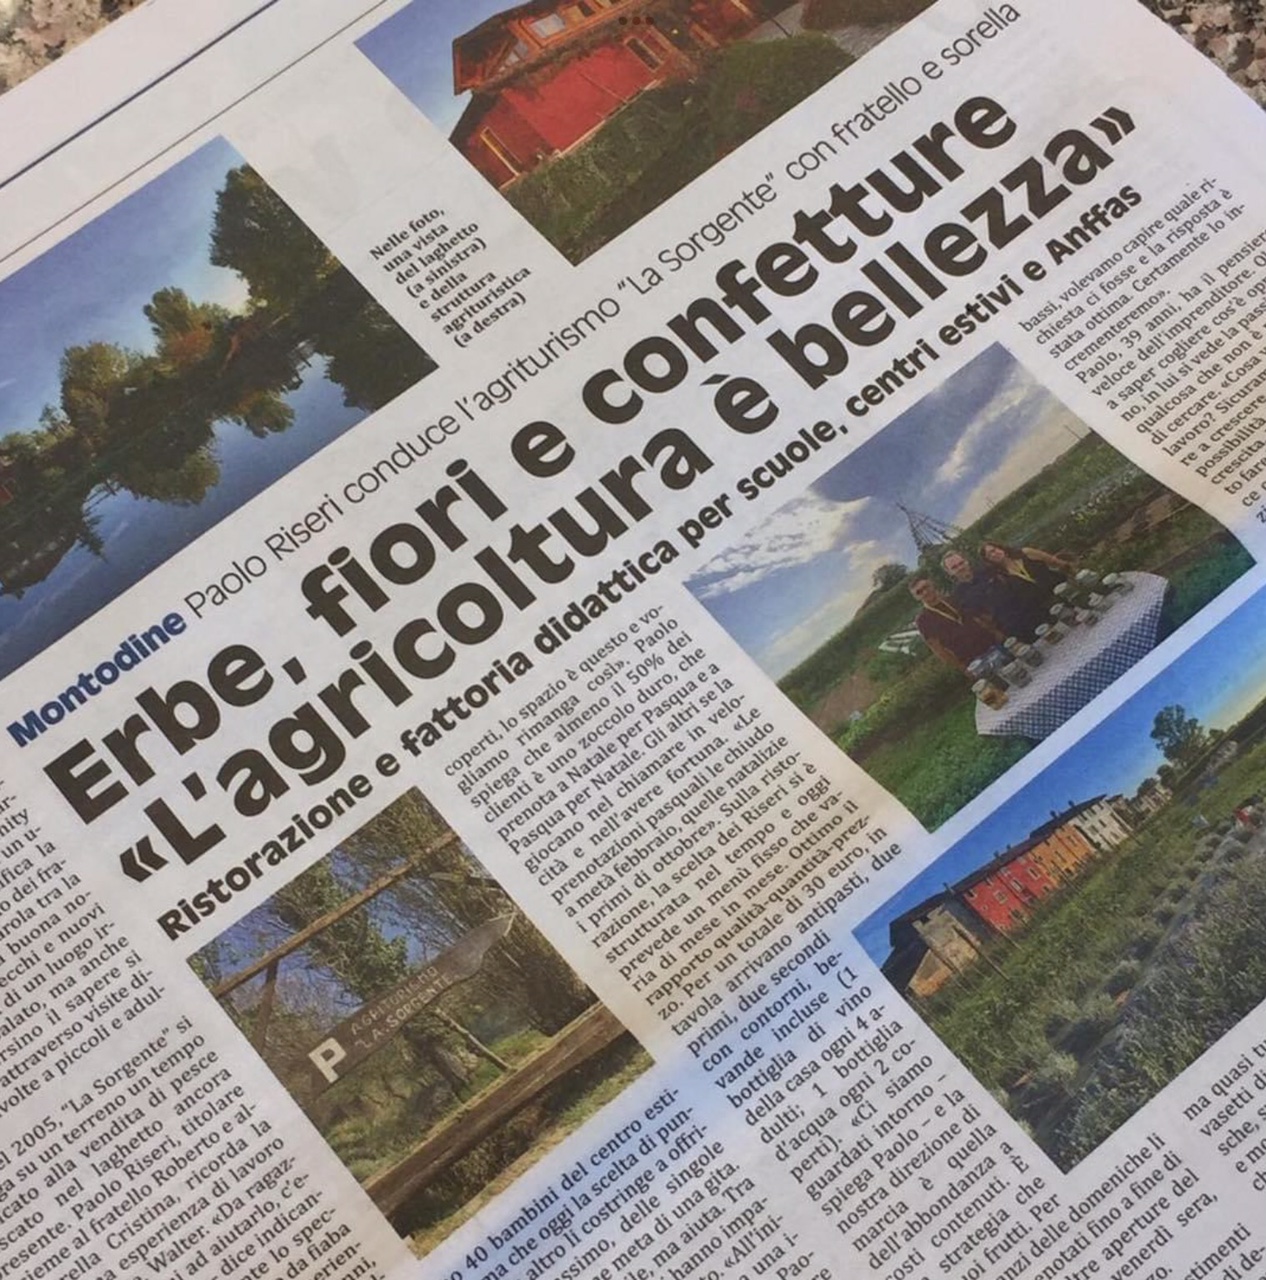 L’Agriturismo La Sorgente di Montodine protagonista di un bellissimo articolo sul settimanale Mondo Padano. Chapeau